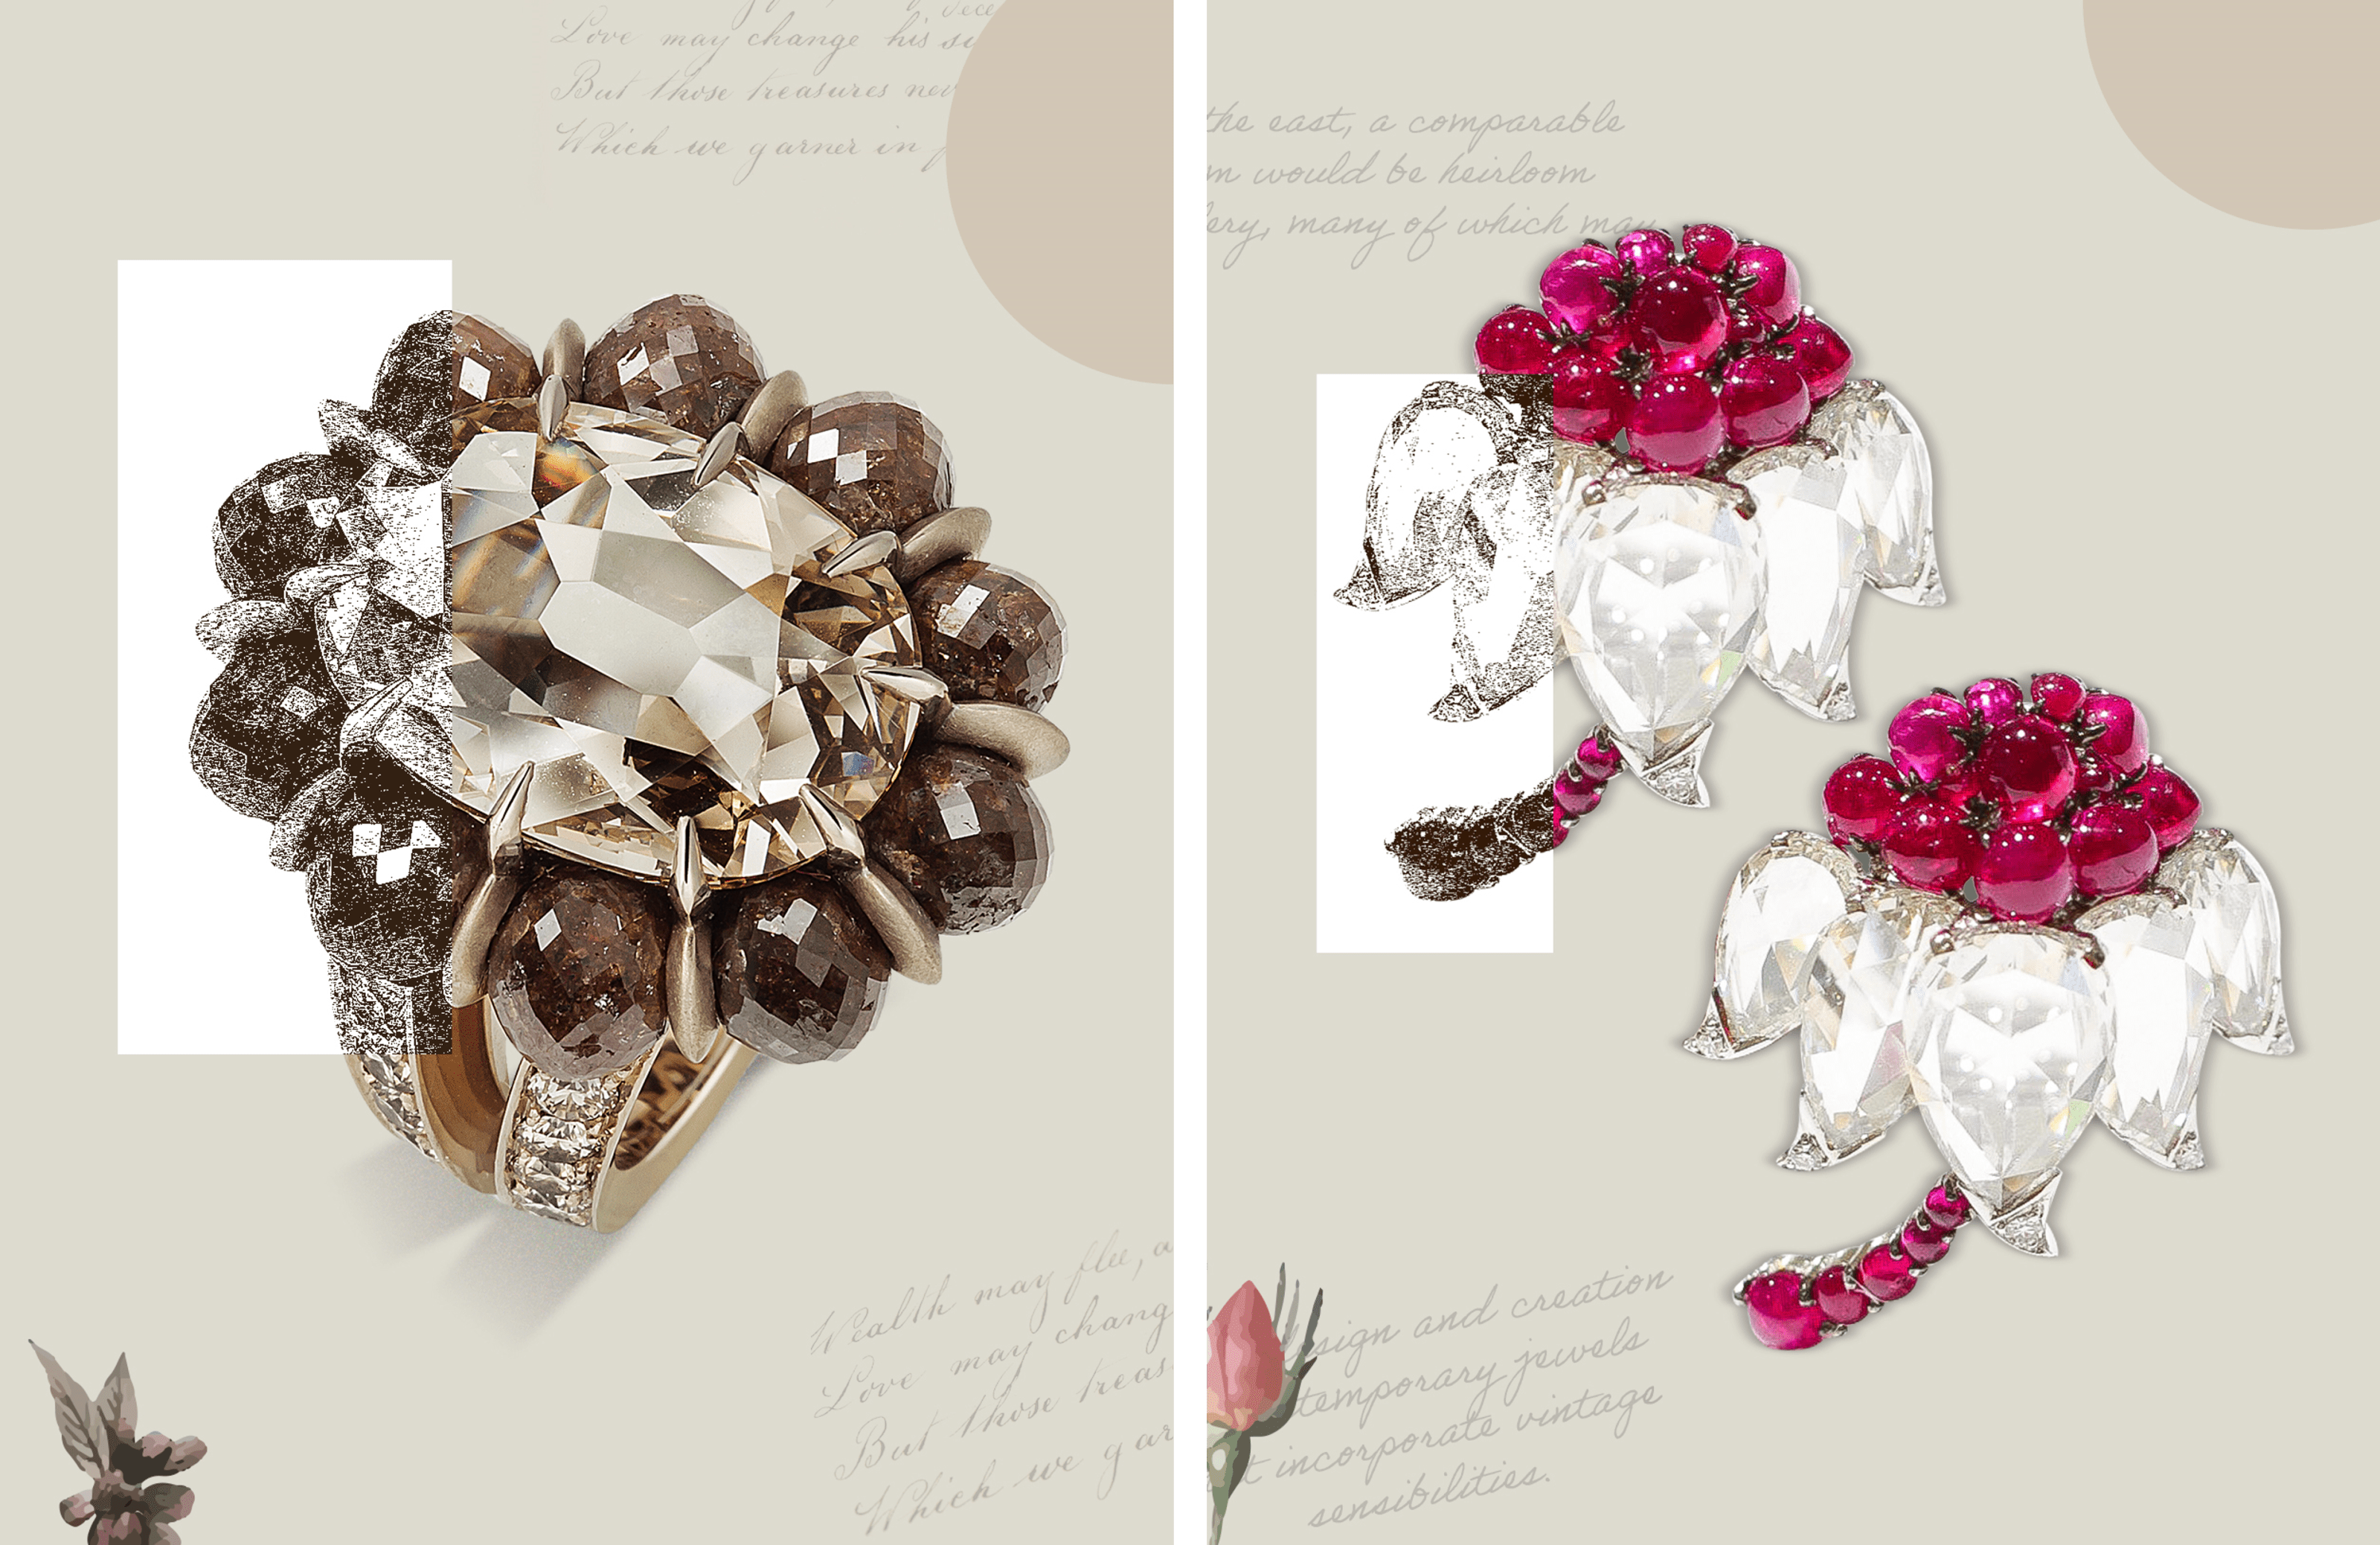 Vintage Hemmerle ring & Ruby Lotus Diamond Earrings
